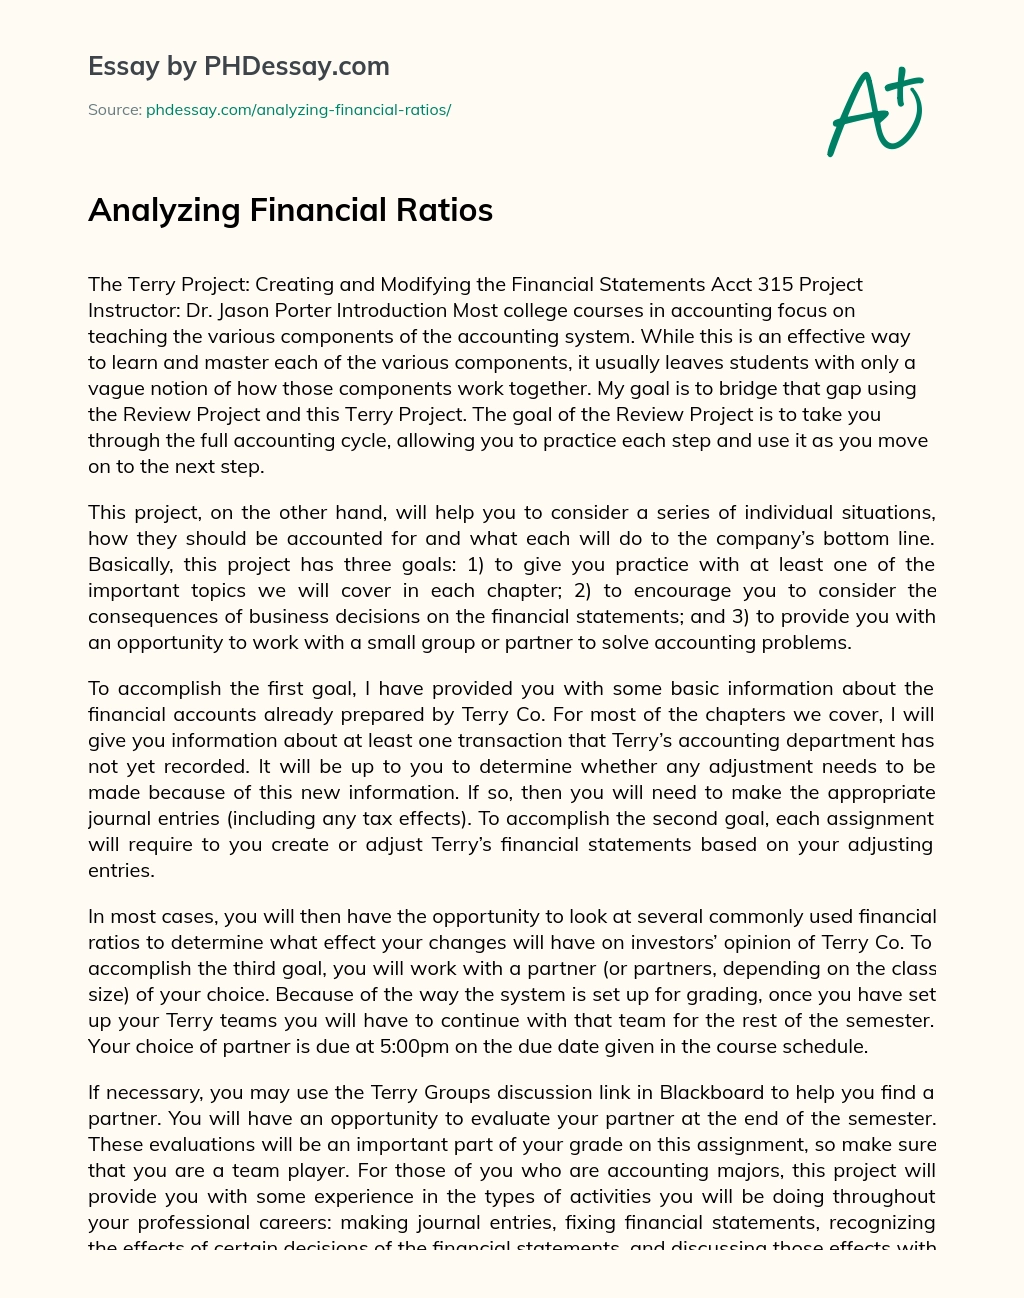 Analyzing Financial Ratios essay